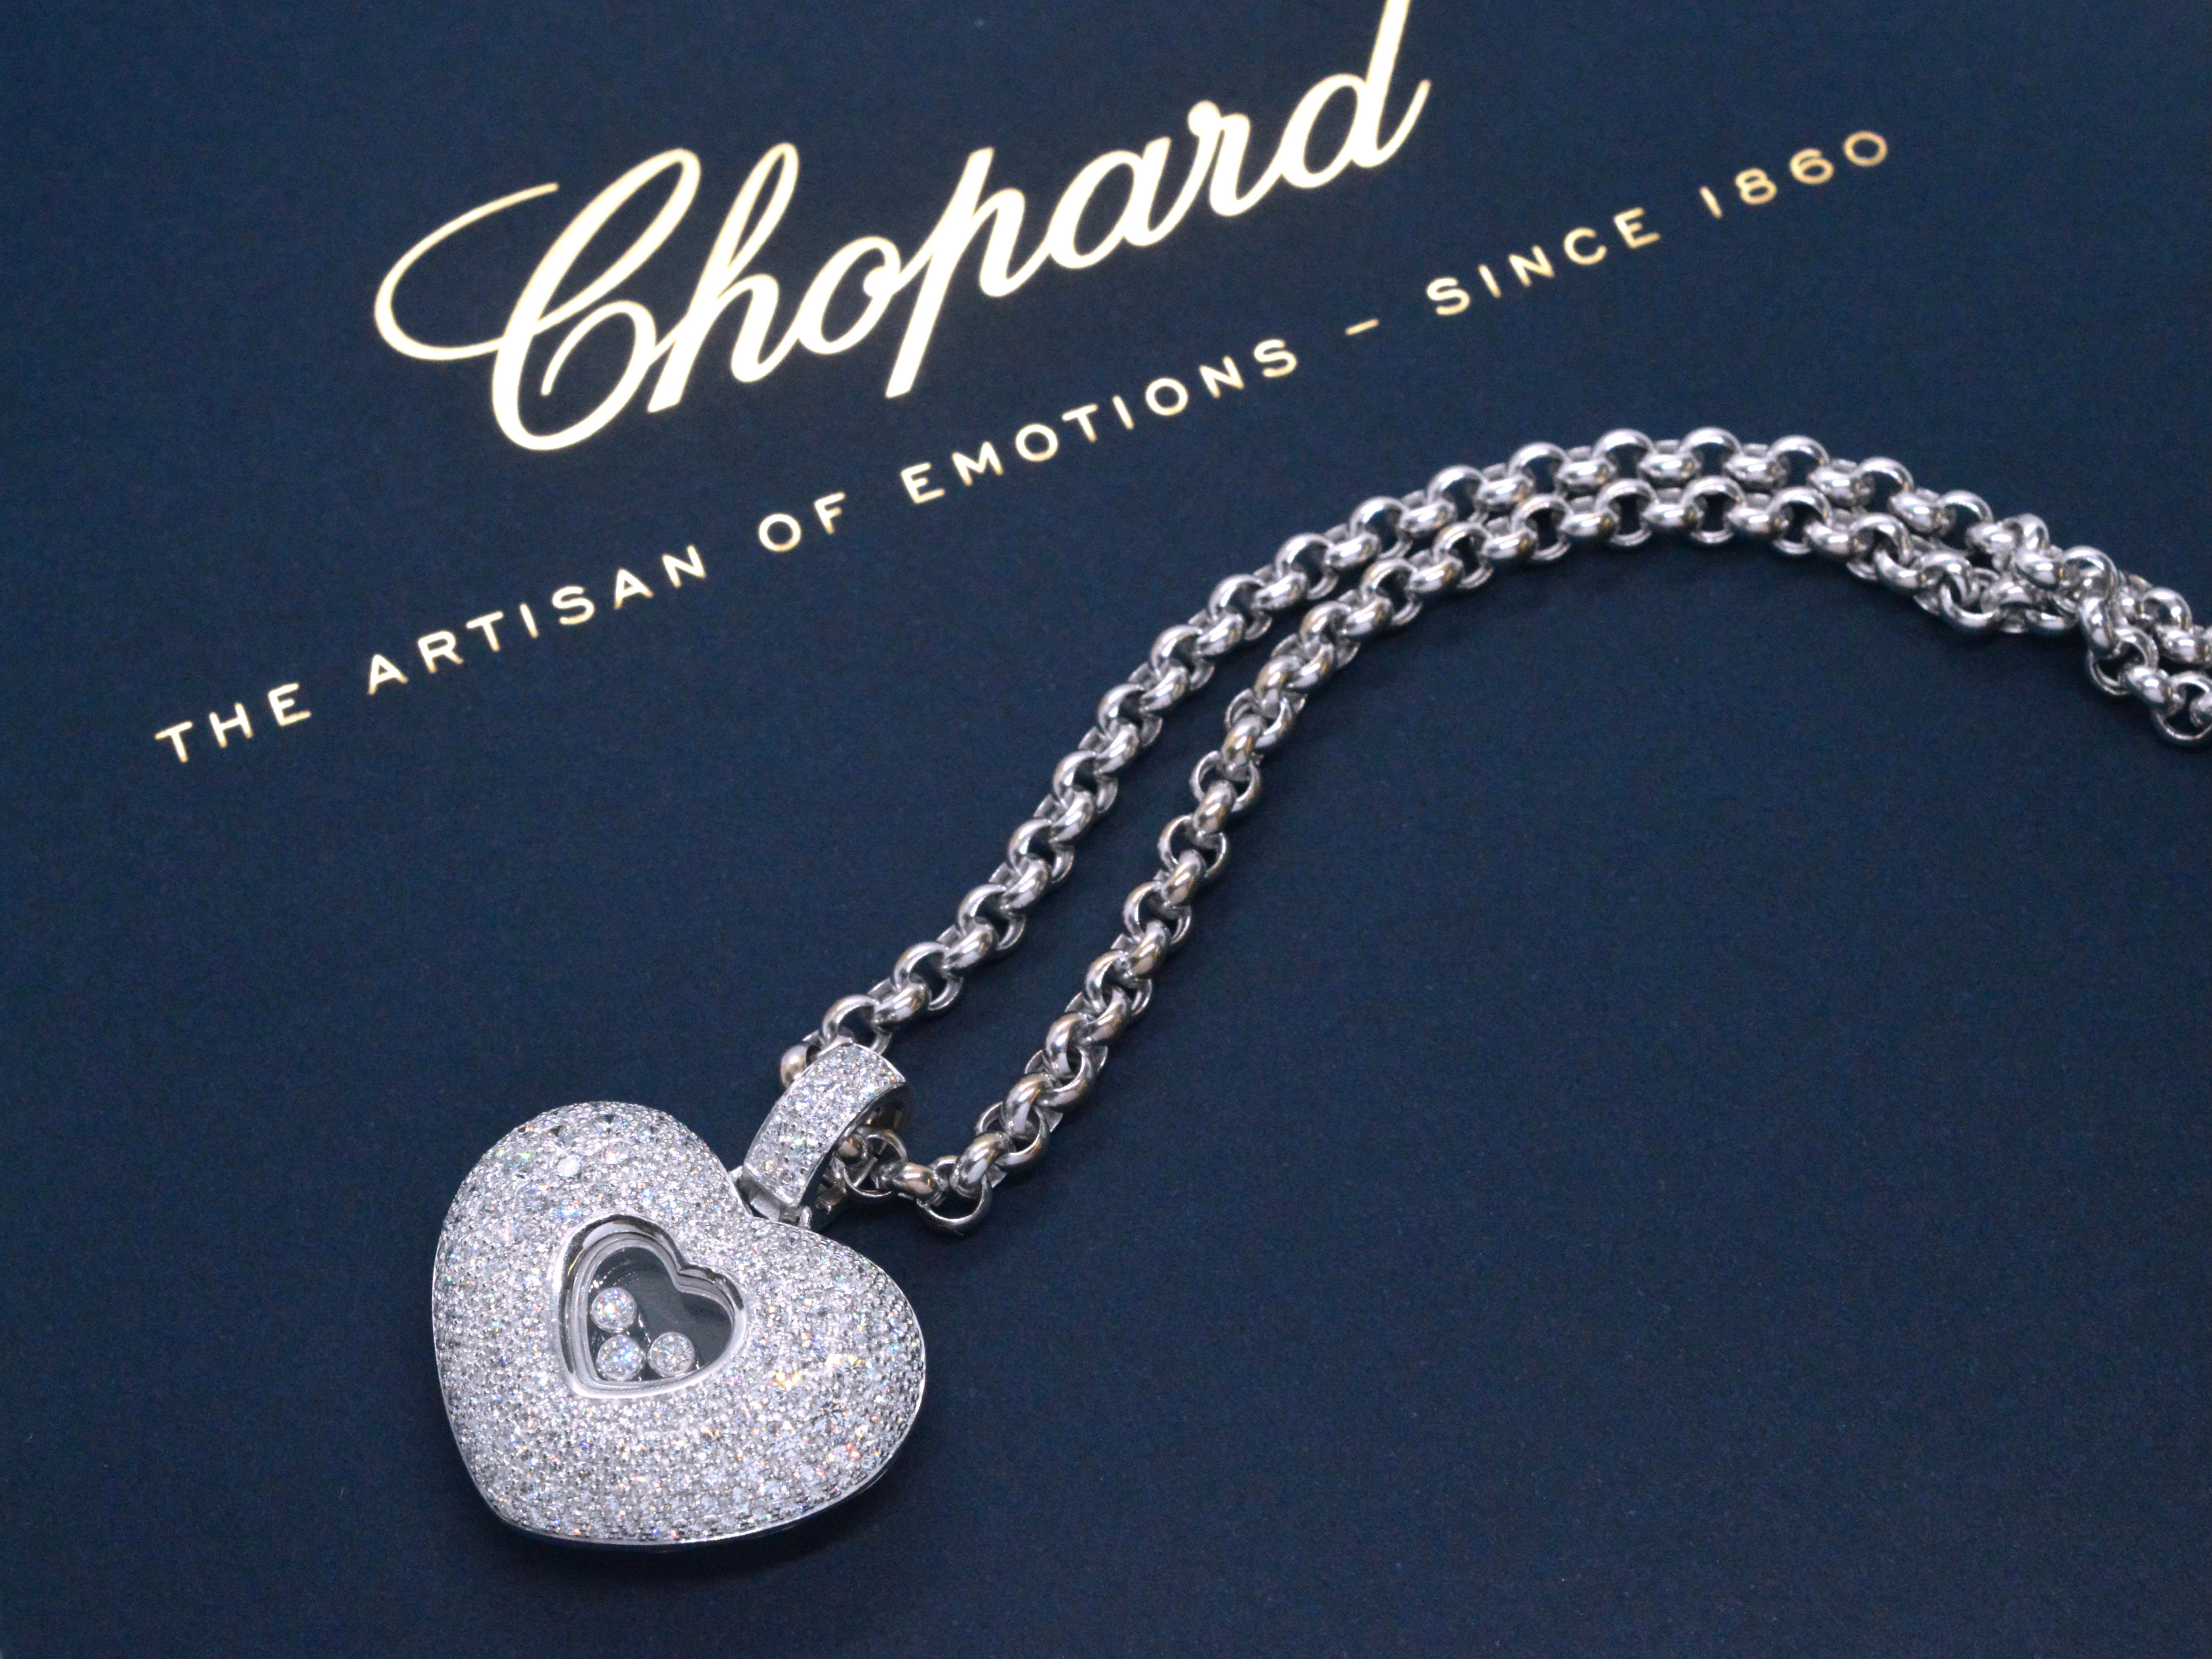 Ce superbe collier Chopard est une pièce exquise de la collection Happy Hearts Diamonds, connue pour son savoir-faire exceptionnel et son design luxueux. Le très grand pendentif est orné de diamants originaux de Chopard, totalisant un impressionnant